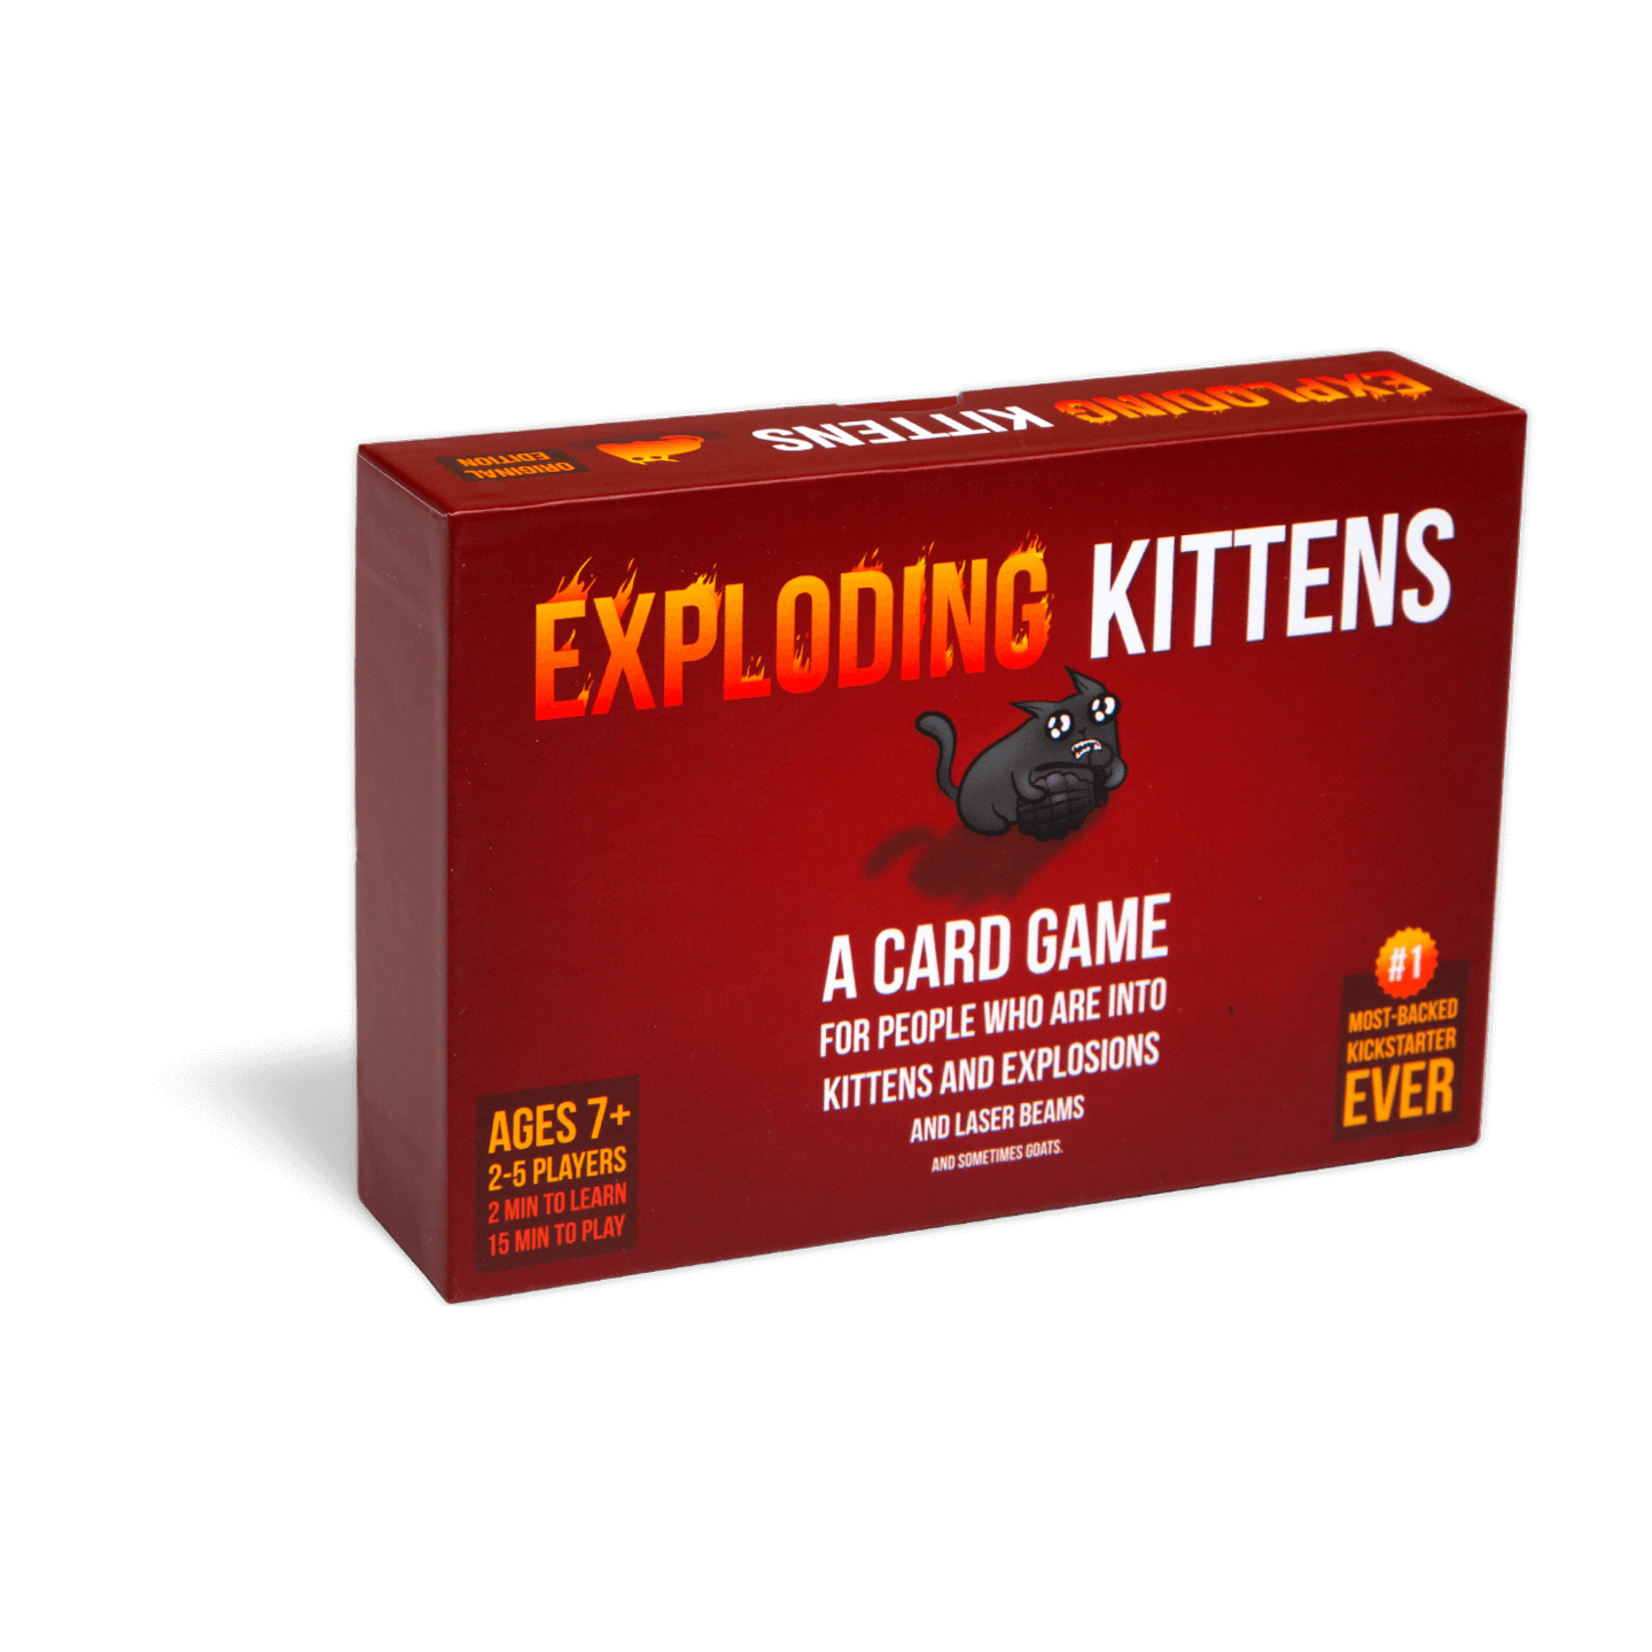 Exploding Kittens Exploding Kittens Original Edition